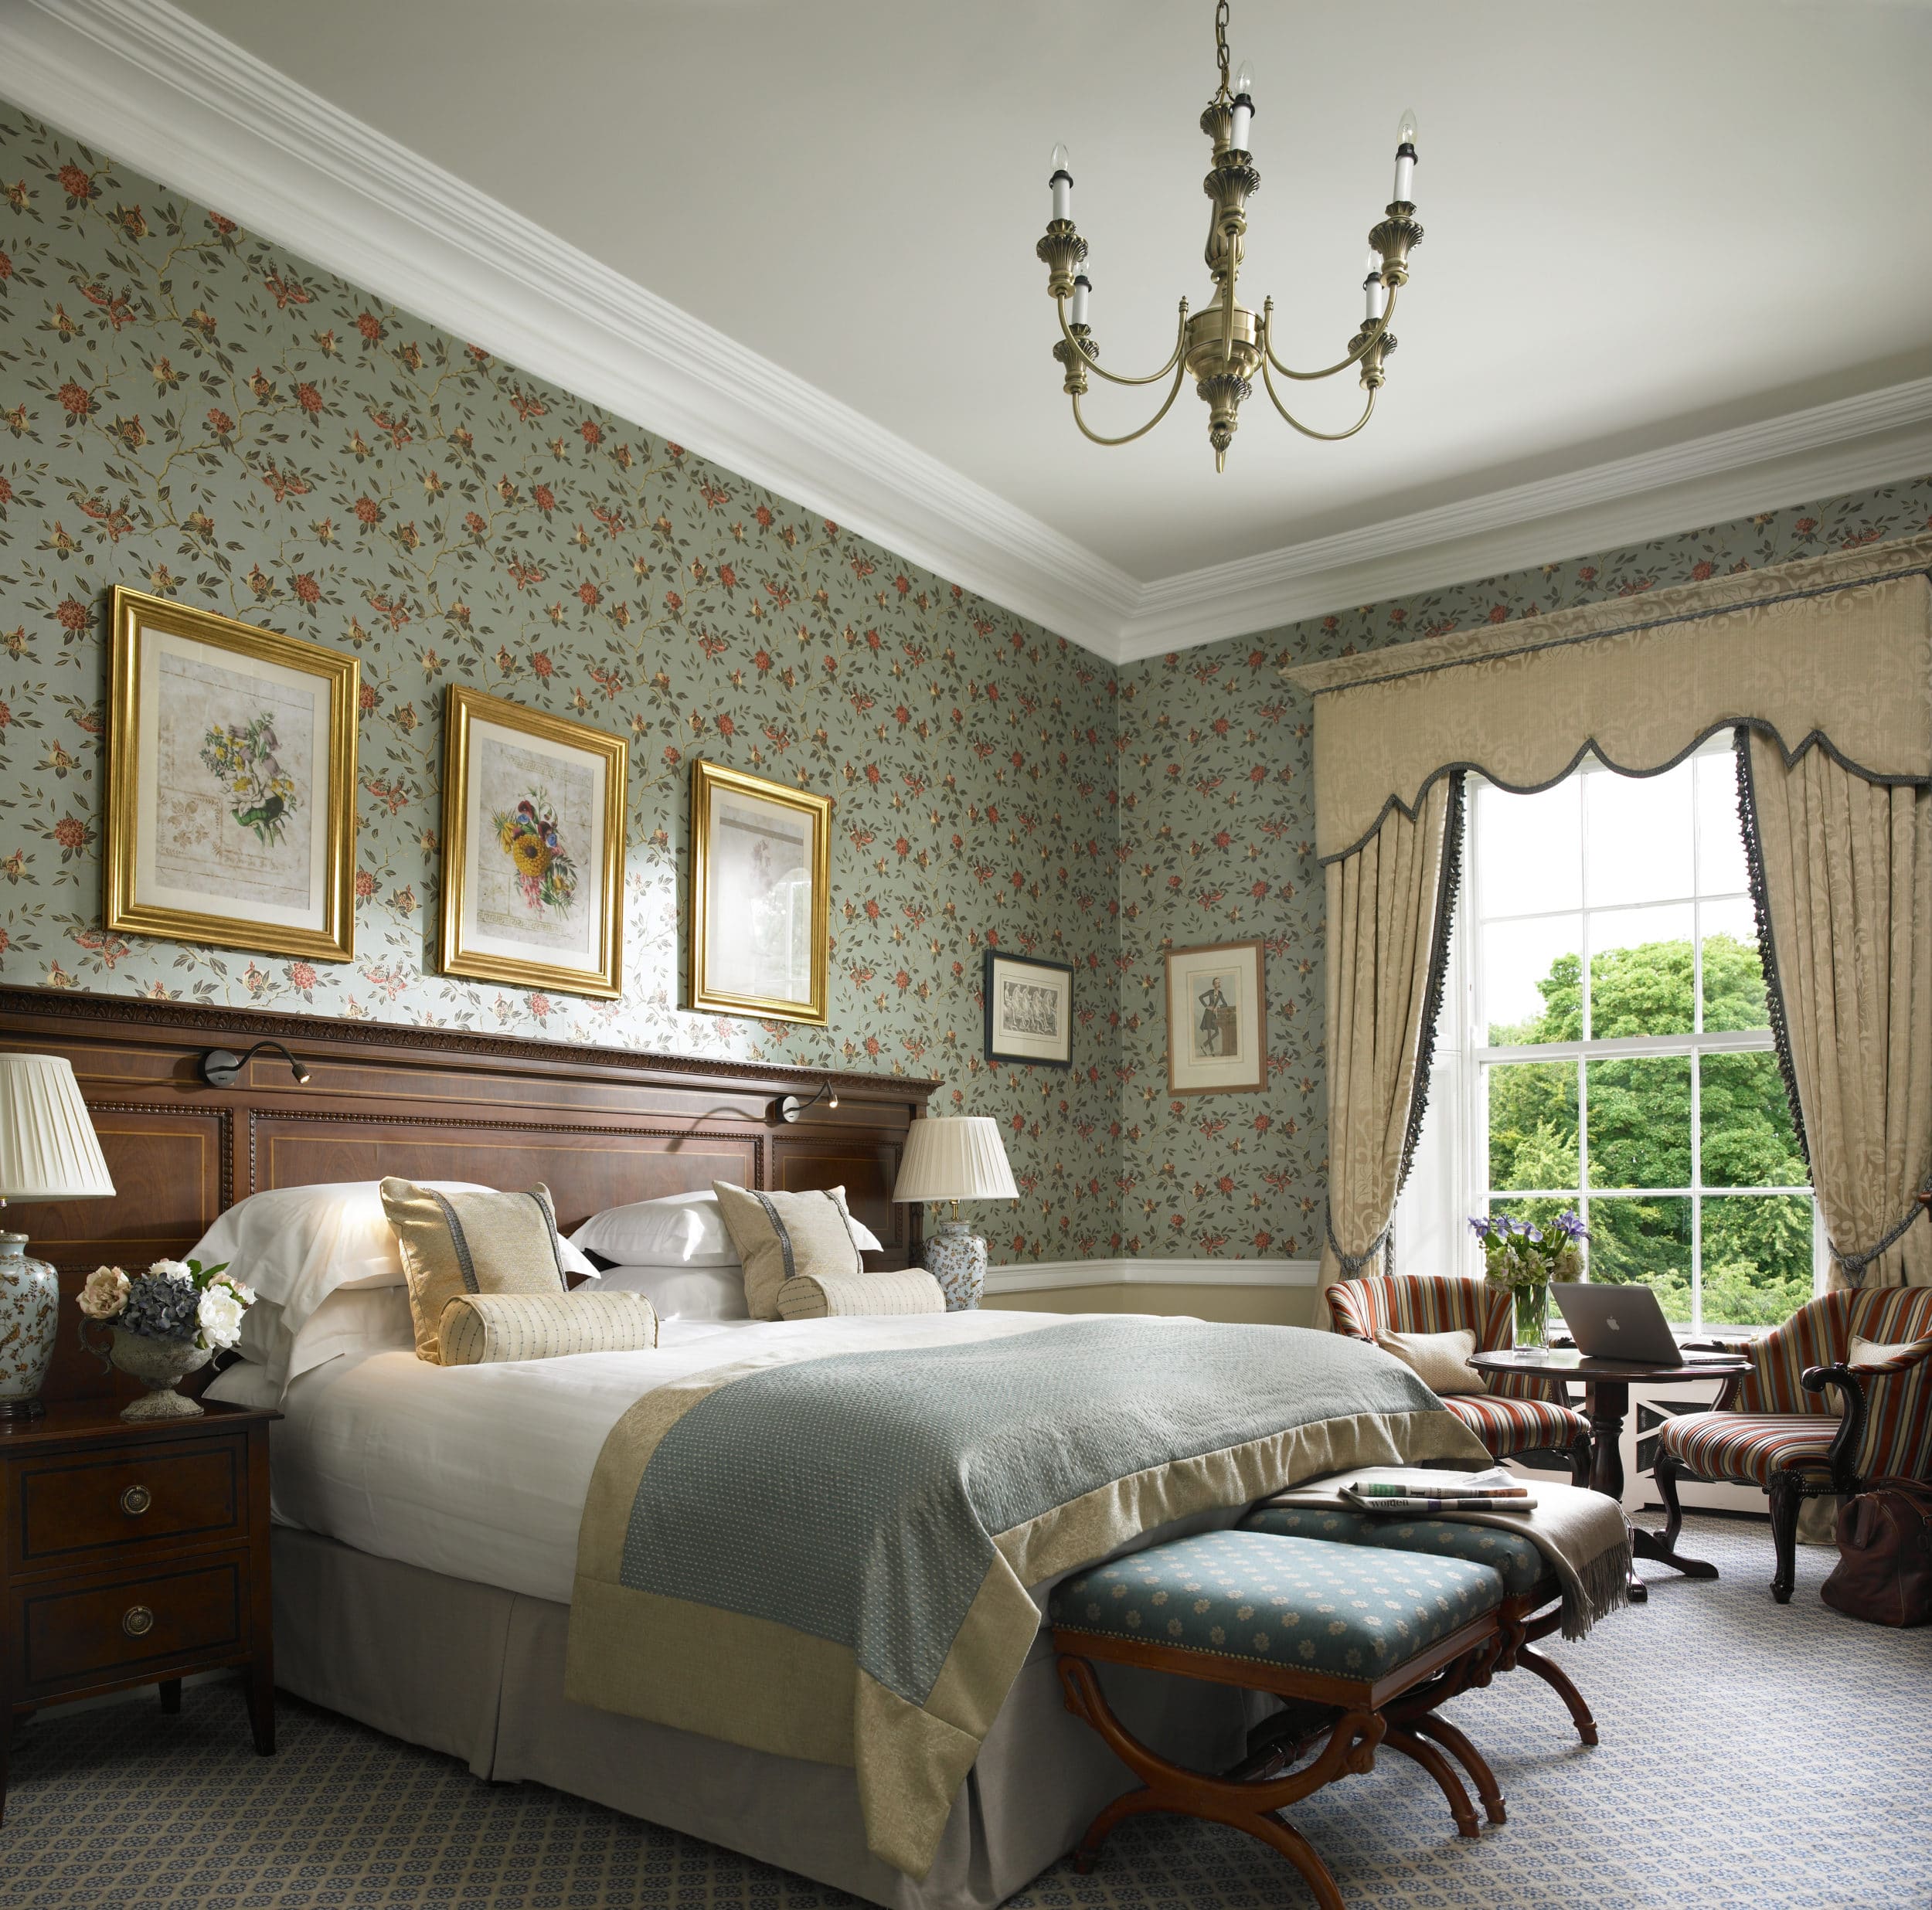 Bedroom Suite at the Kildare Hotel Spa & Golf Club near Straffan in County Kildare.